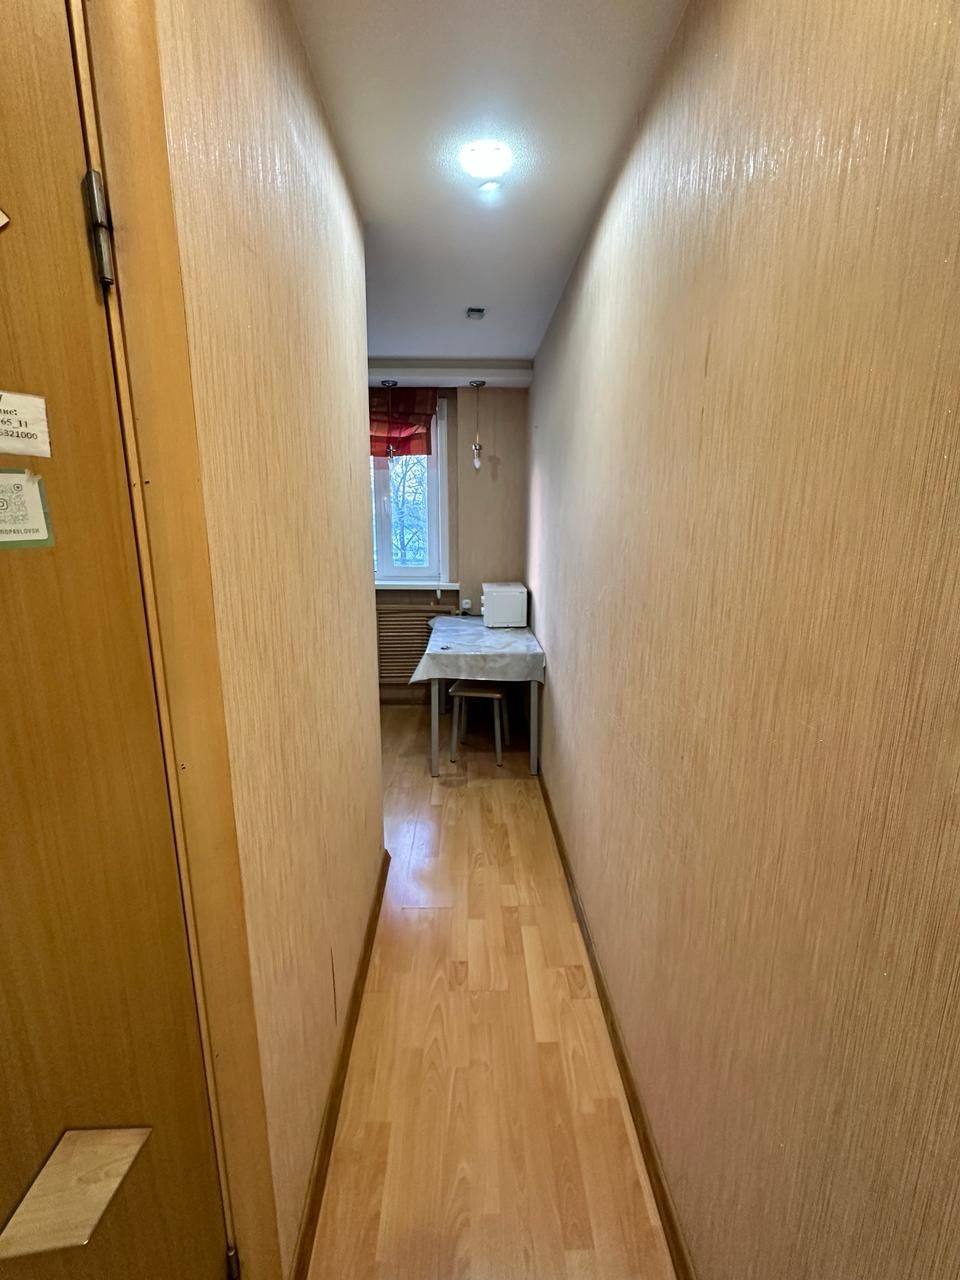 Продам 1 комнатная квартира  в районе Тайги 13300млн